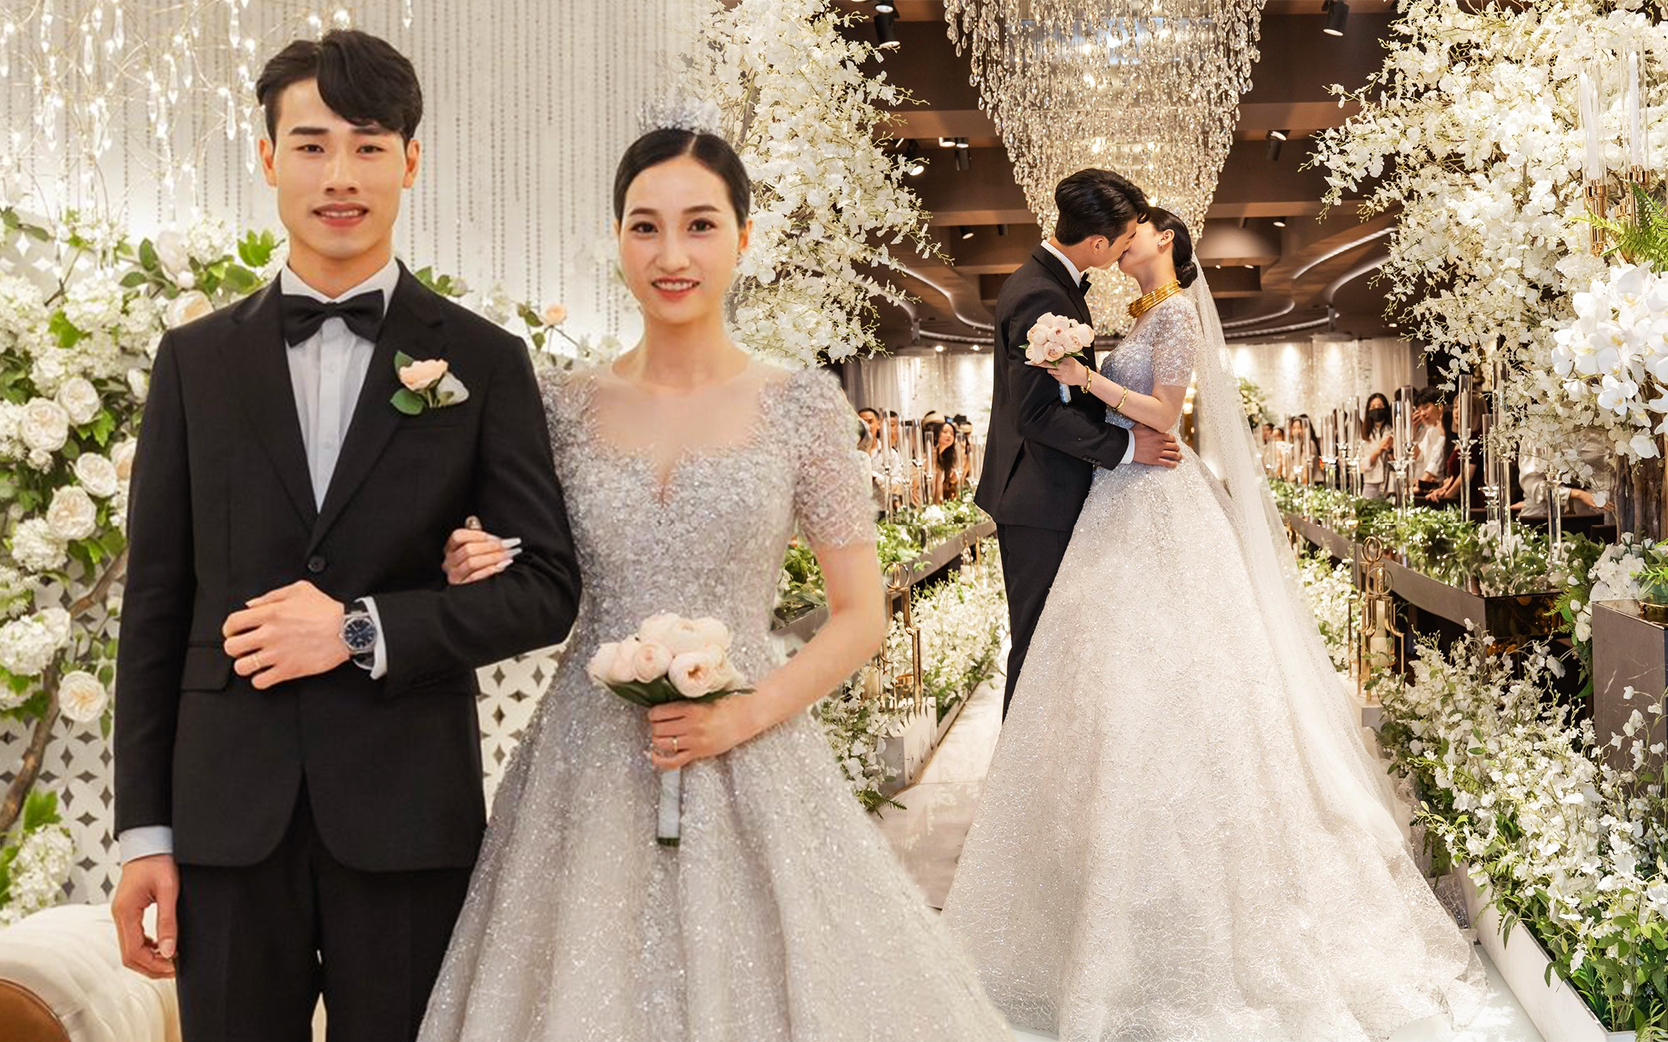 Cặp đôi Việt Nam chi 600 triệu t?chức đám cưới đẹp như phim tại Hàn Quốc